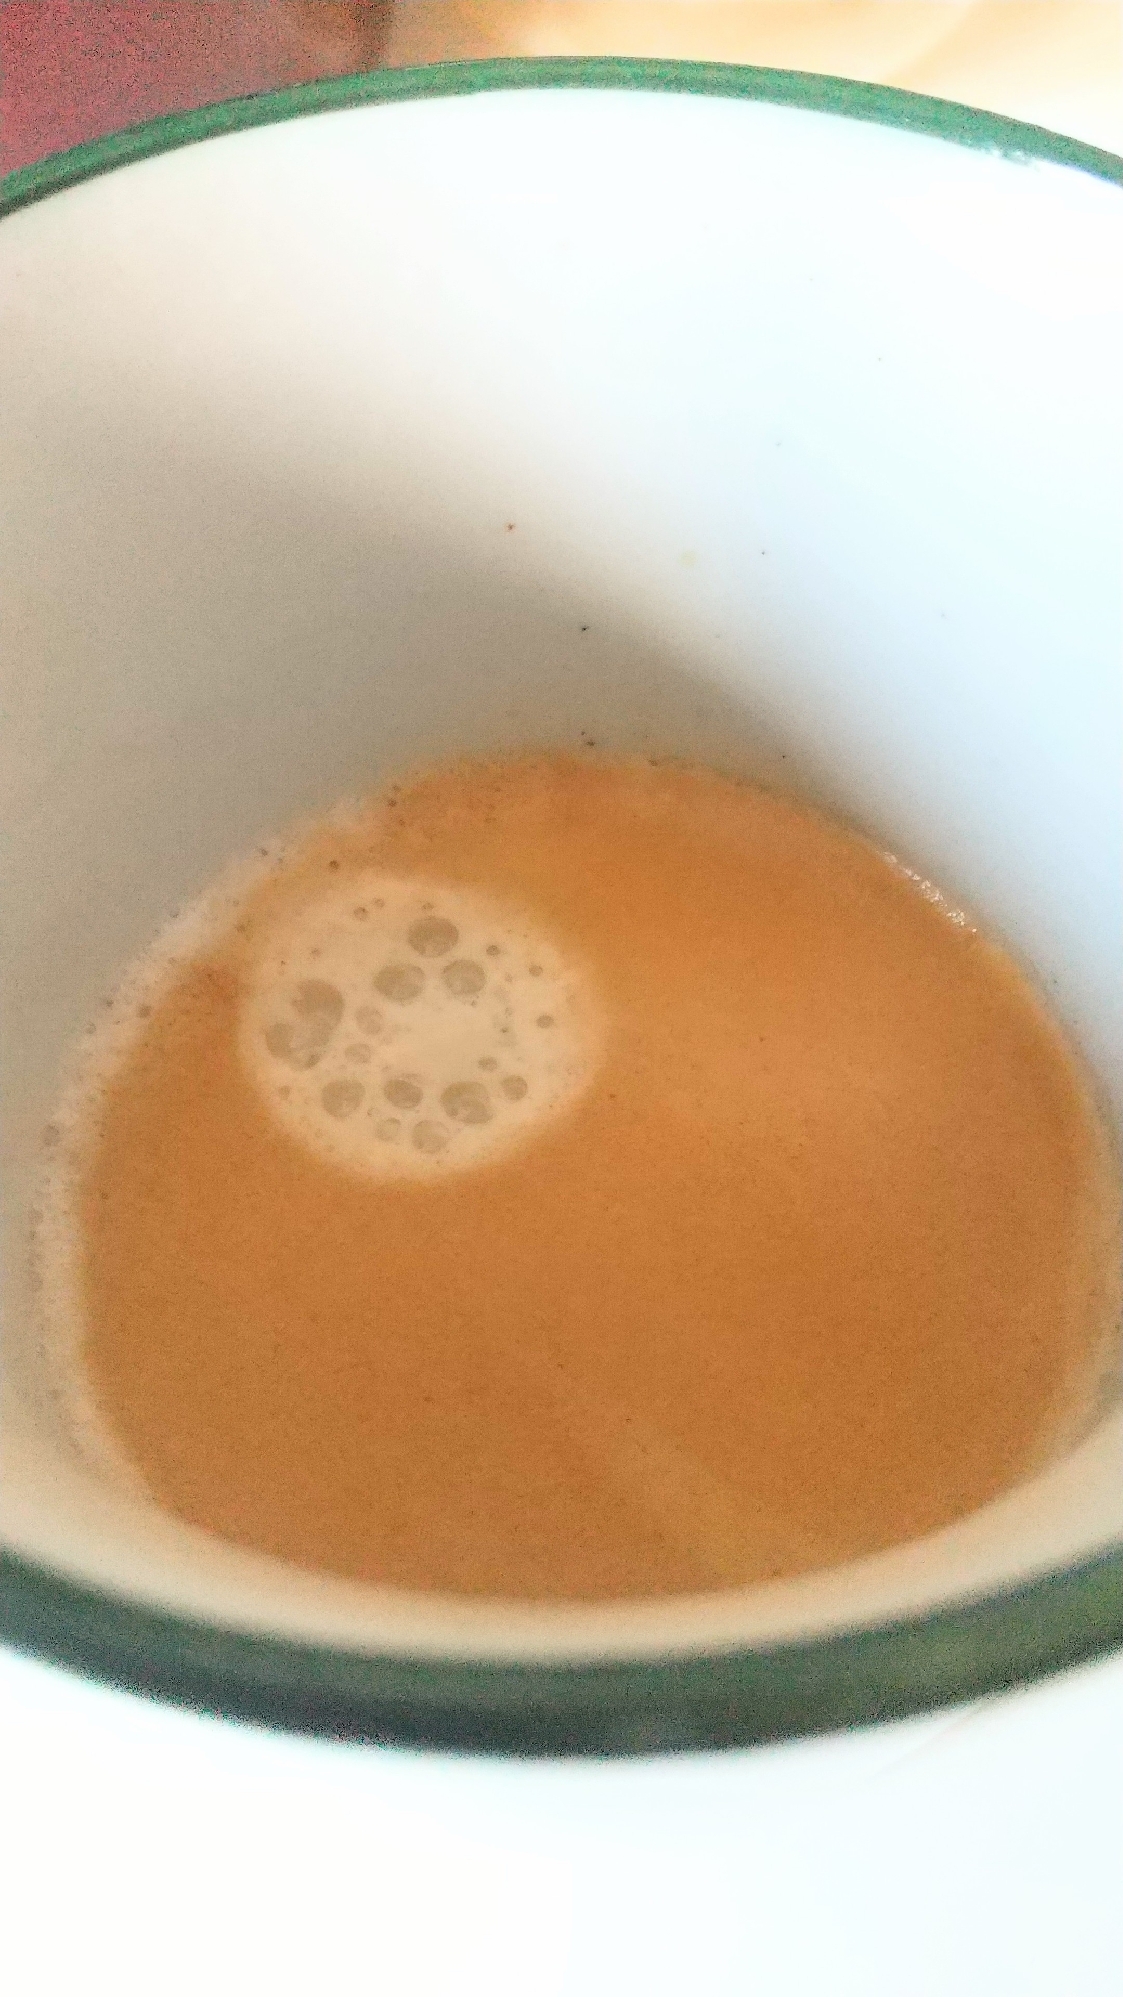 暖まる♪カルーア×練乳コーヒー